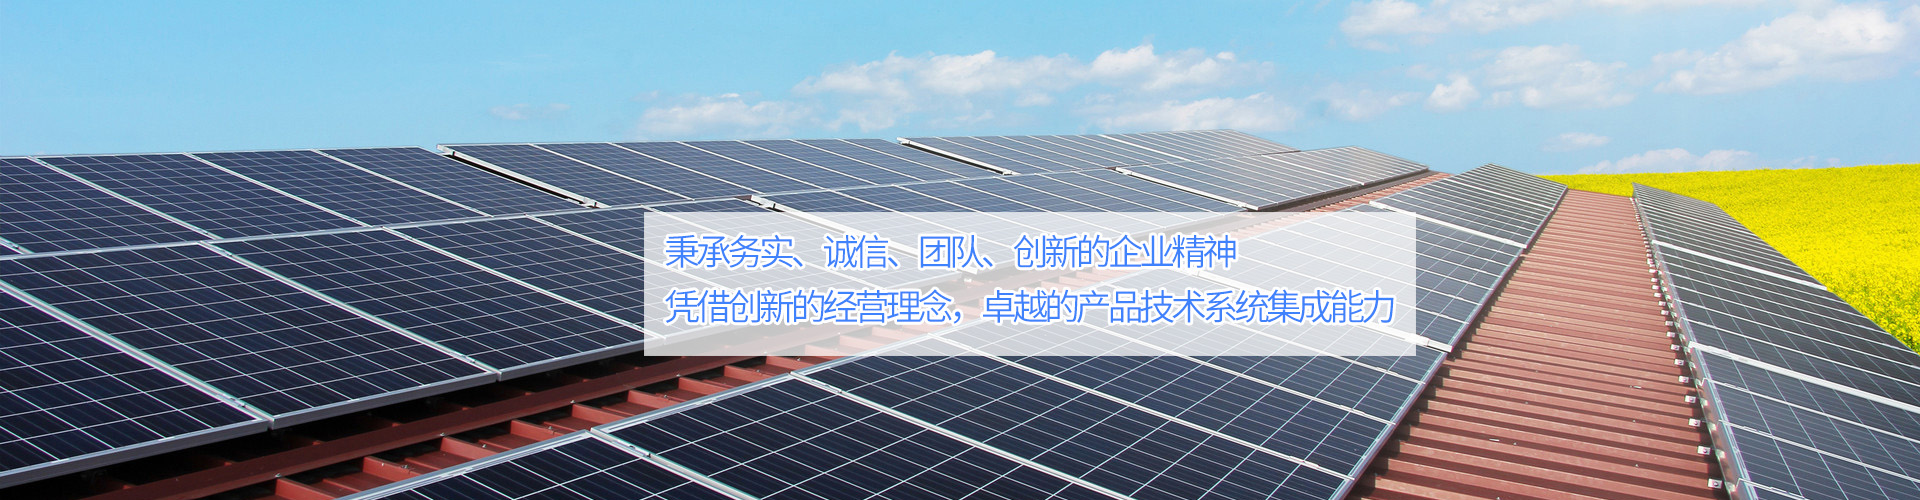 江西南昌屋顶太阳能光伏发电—江西艾能科技有限公司